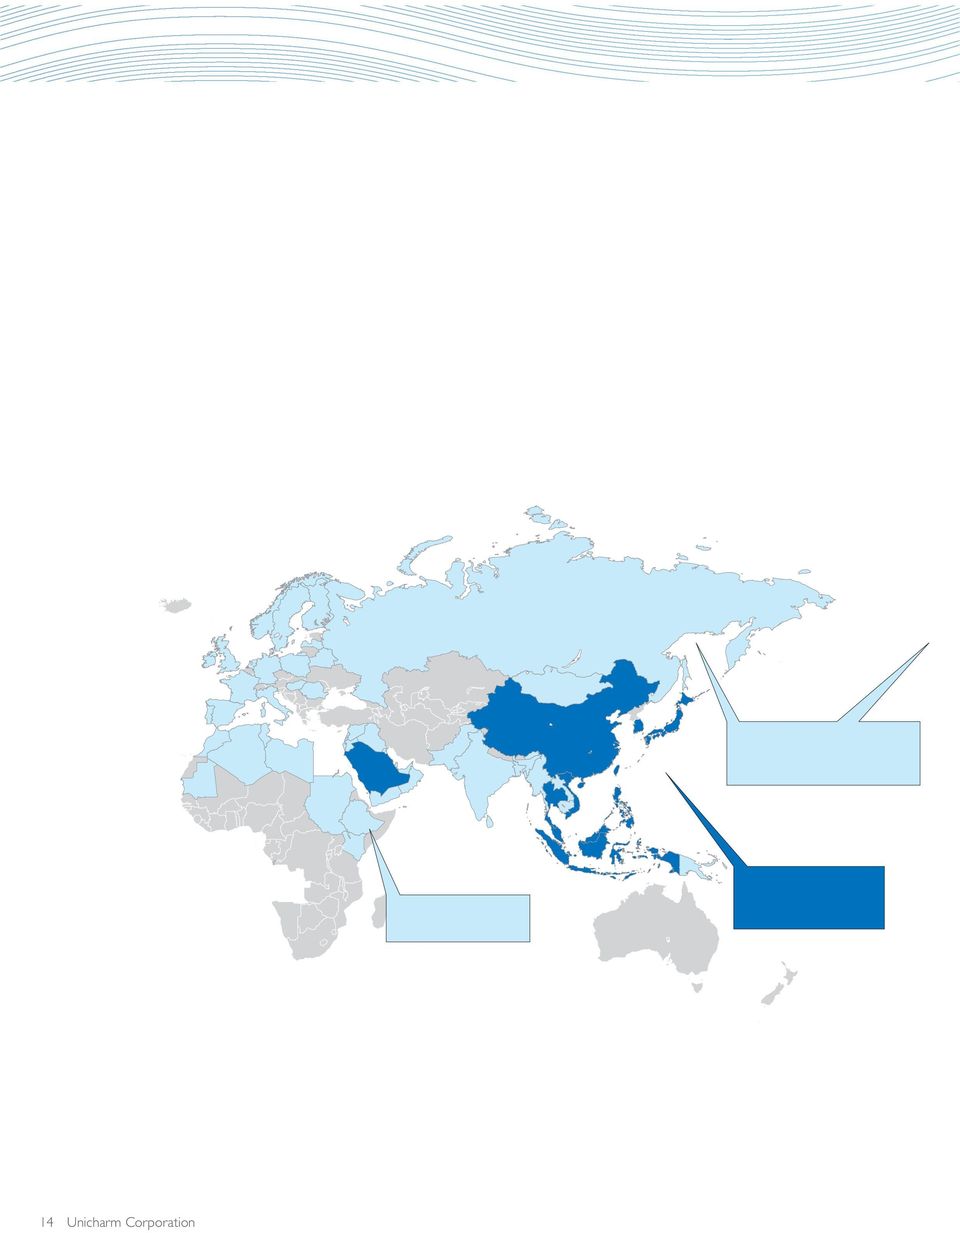 アジア,1 9億円,7 26億円 9,62億円 ヨーロッパ 北米においては ジョイントベンチャー ライセンス事業を強化 直接進出国 輸出販売国 ライセンス商品販売国 11 の国と地域で展開 No.